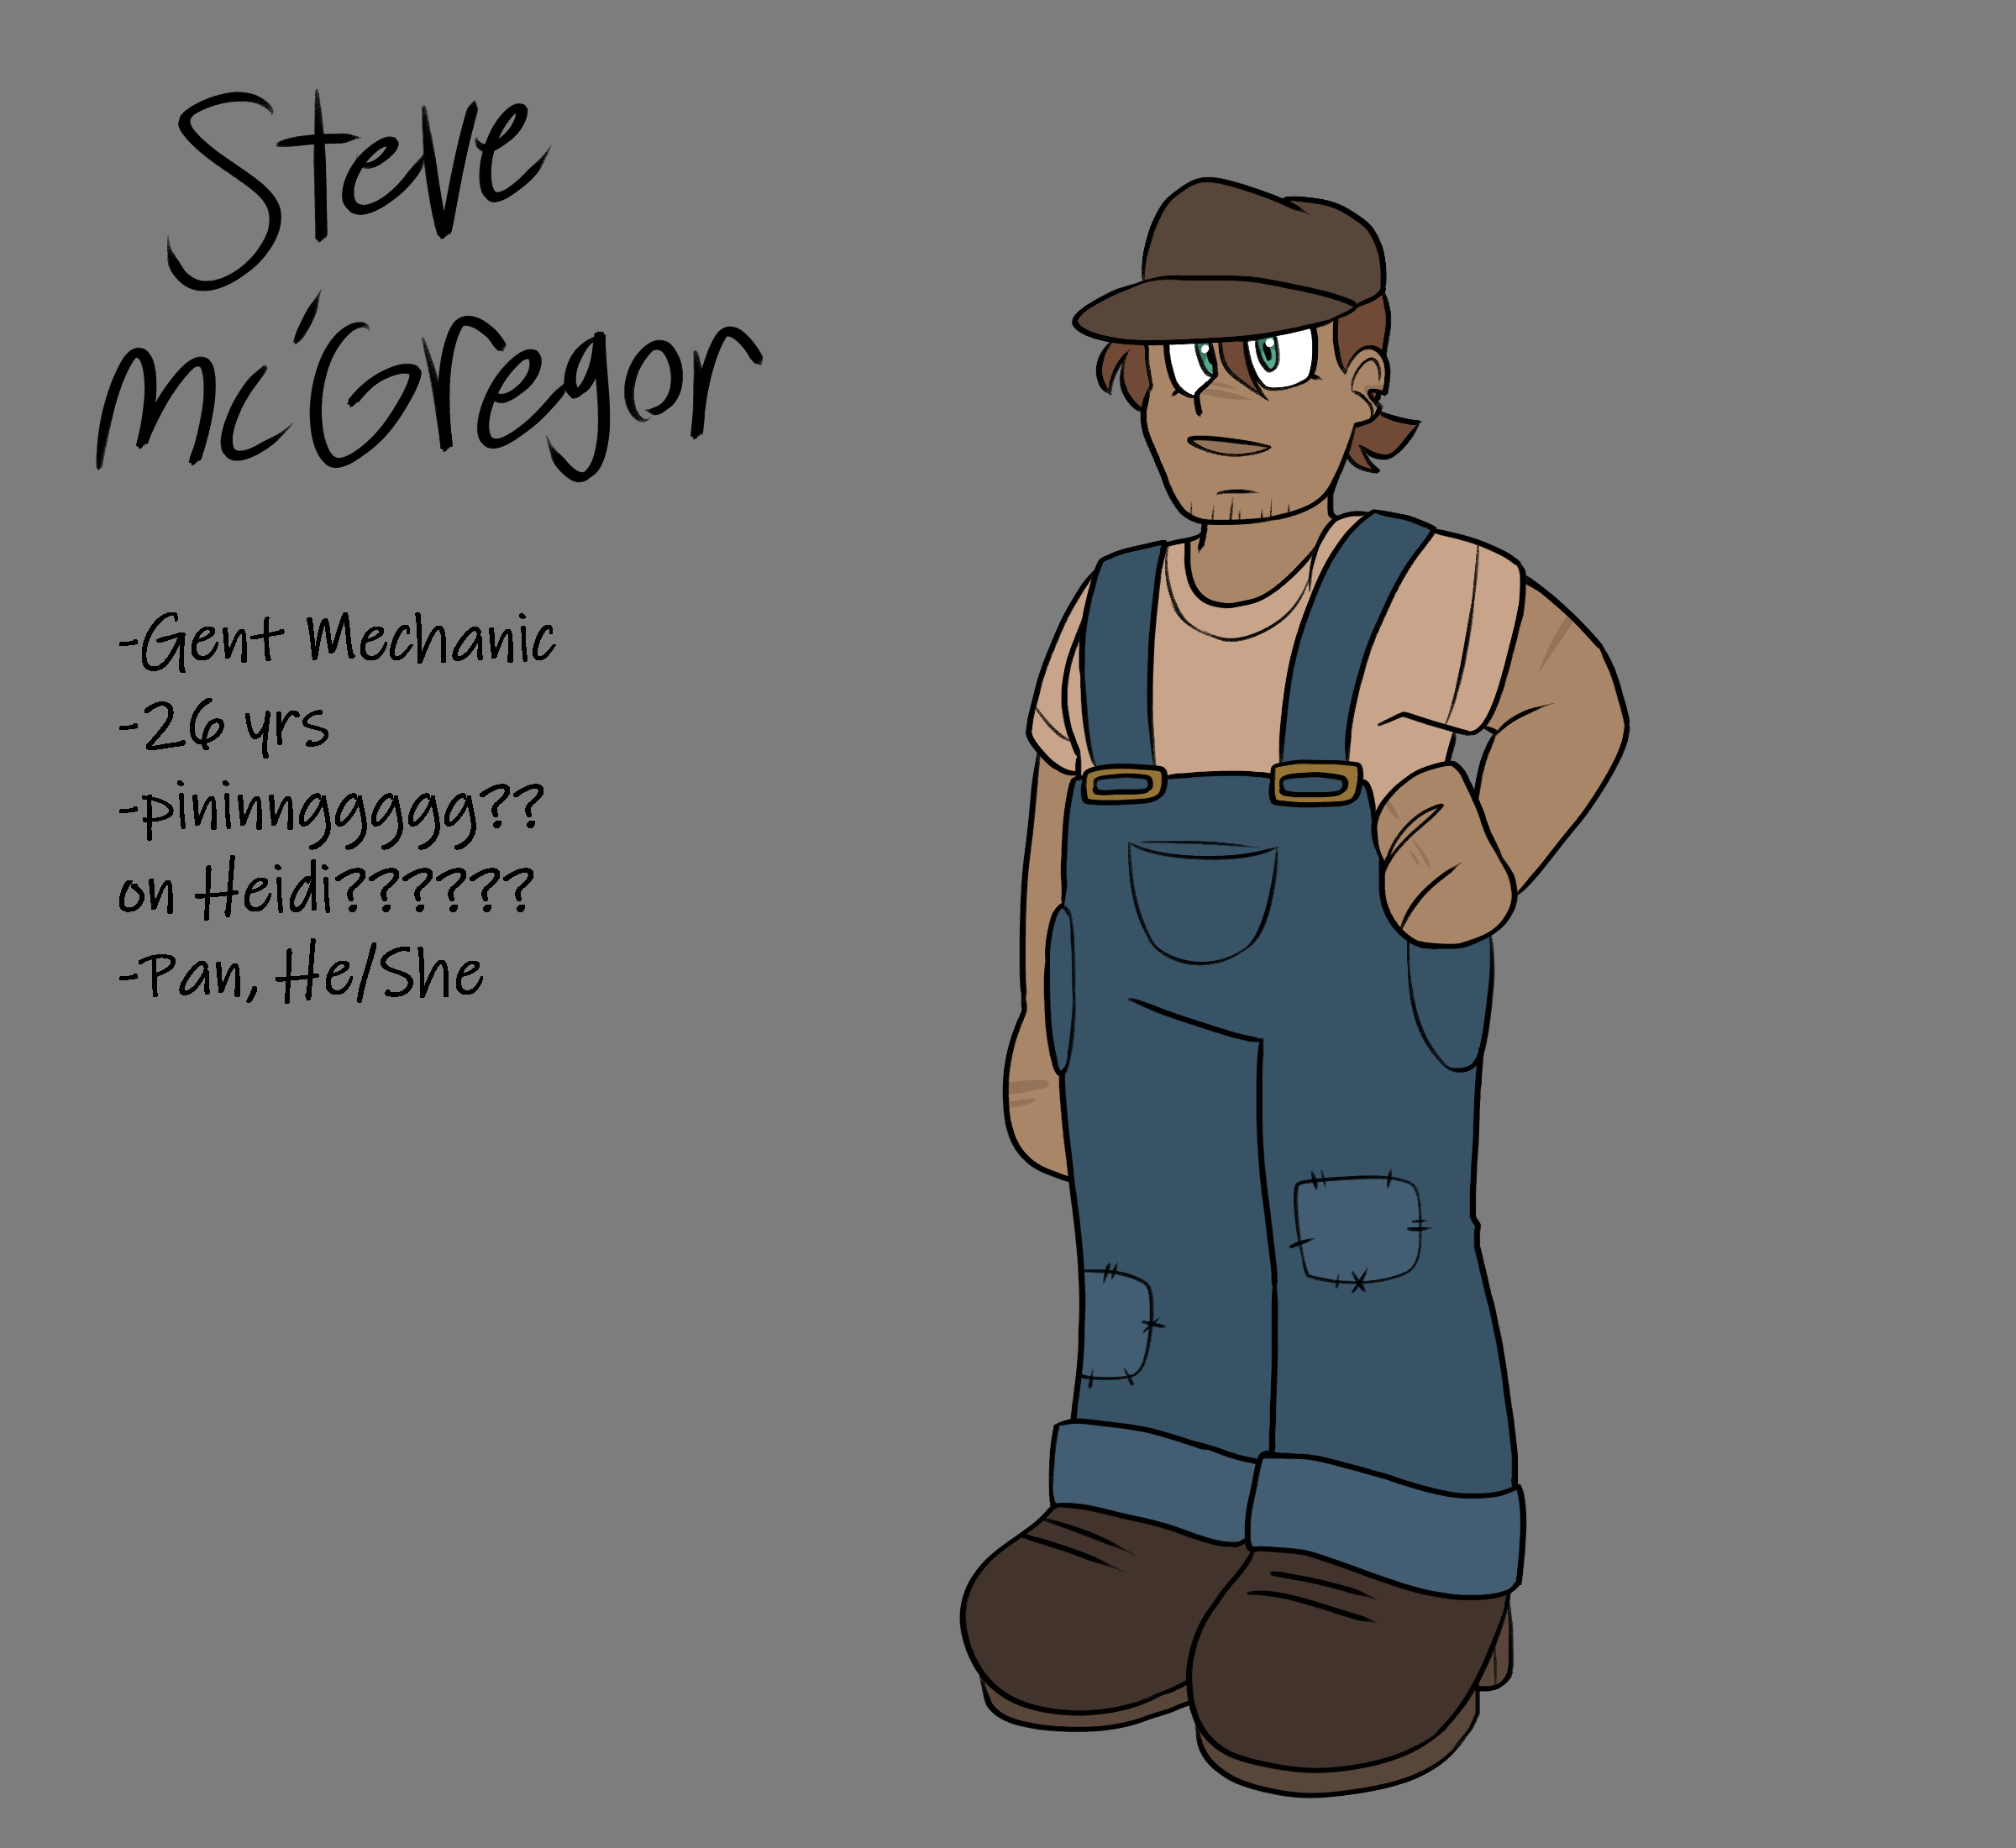 Steve Mc'Gregor